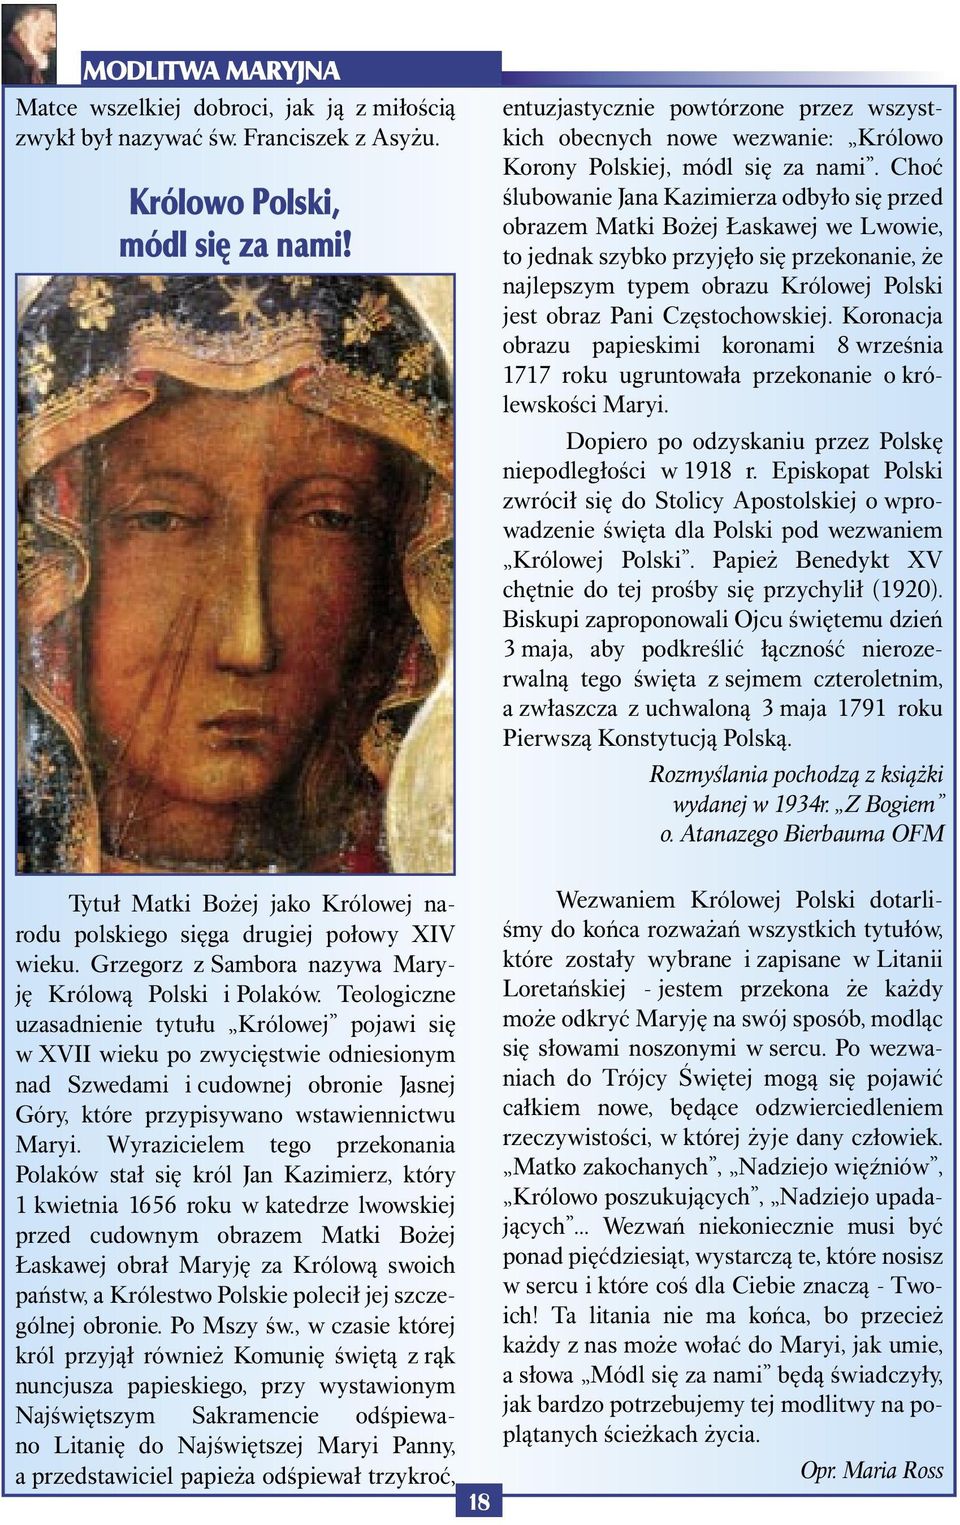 Choć ślubowanie Jana Kazimierza odbyło się przed obrazem Matki Bożej Łaskawej we Lwowie, to jednak szybko przyjęło się przekonanie, że najlepszym typem obrazu Królowej Polski jest obraz Pani